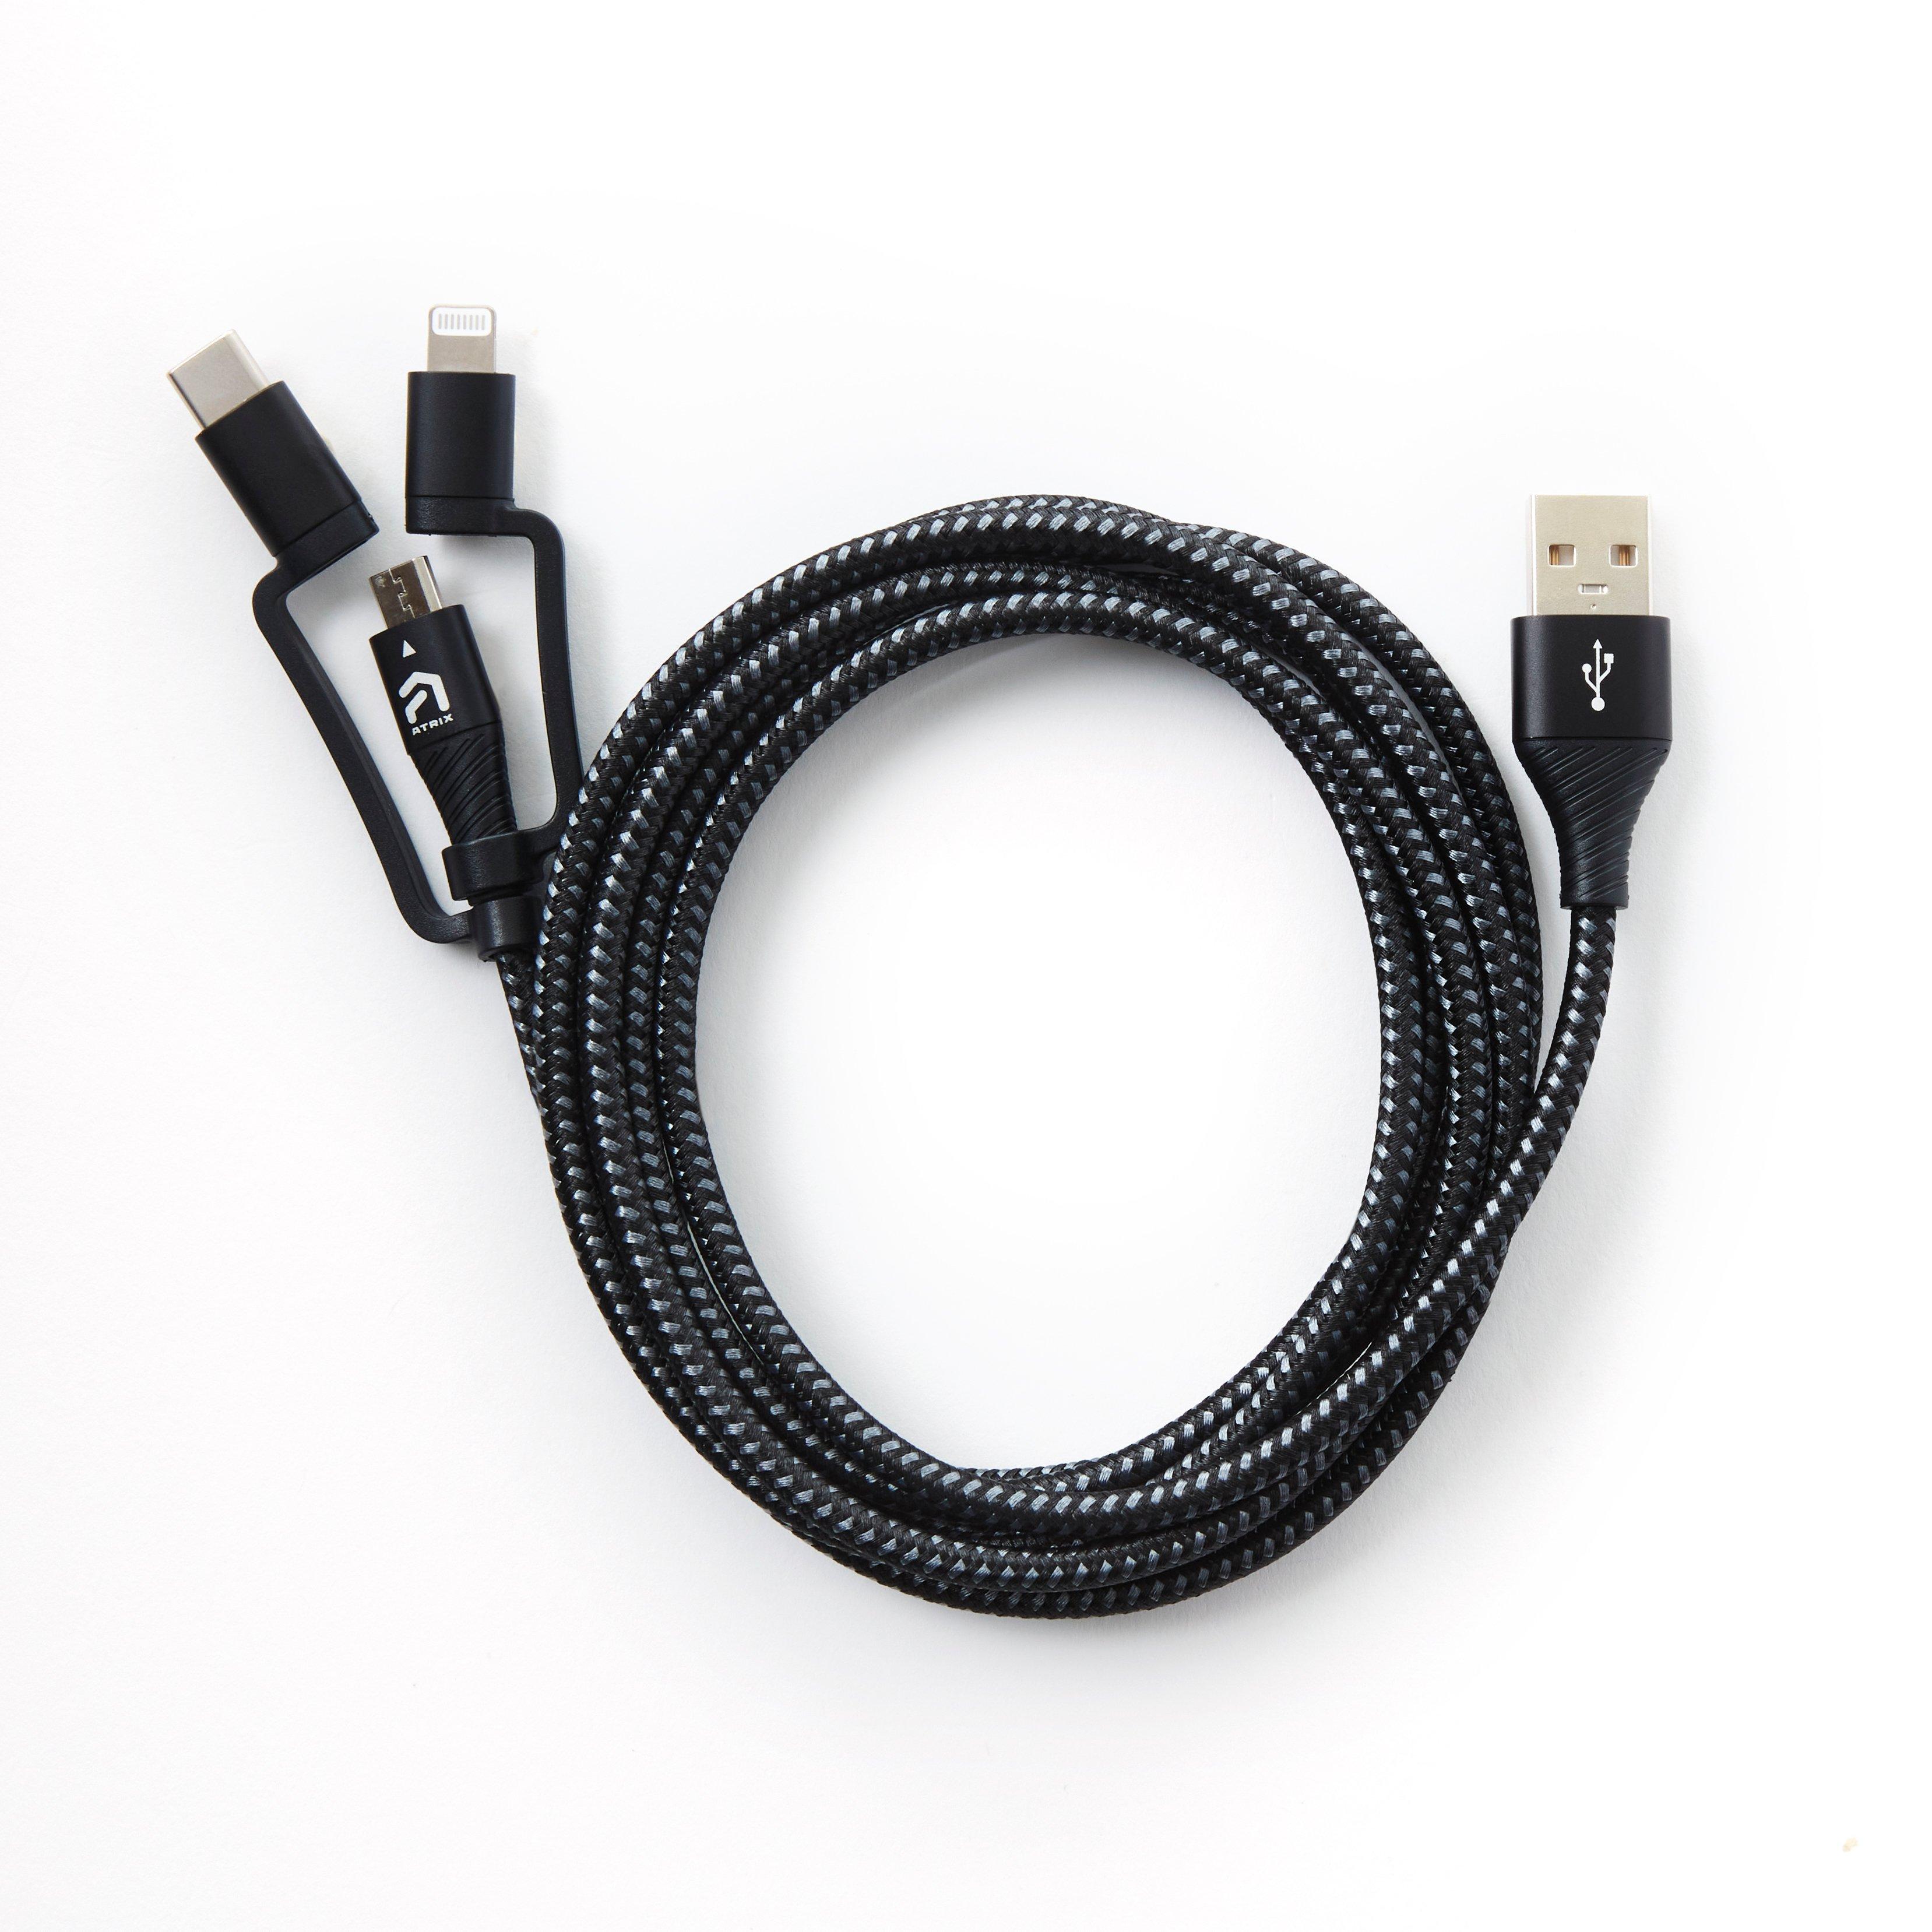 hemel De waarheid vertellen Gebakjes Atrix 3-in-1 Braided Nylon Charging Cable for Lightning, USB-C and Micro-USB  Devices GameStop Exclusive | GameStop